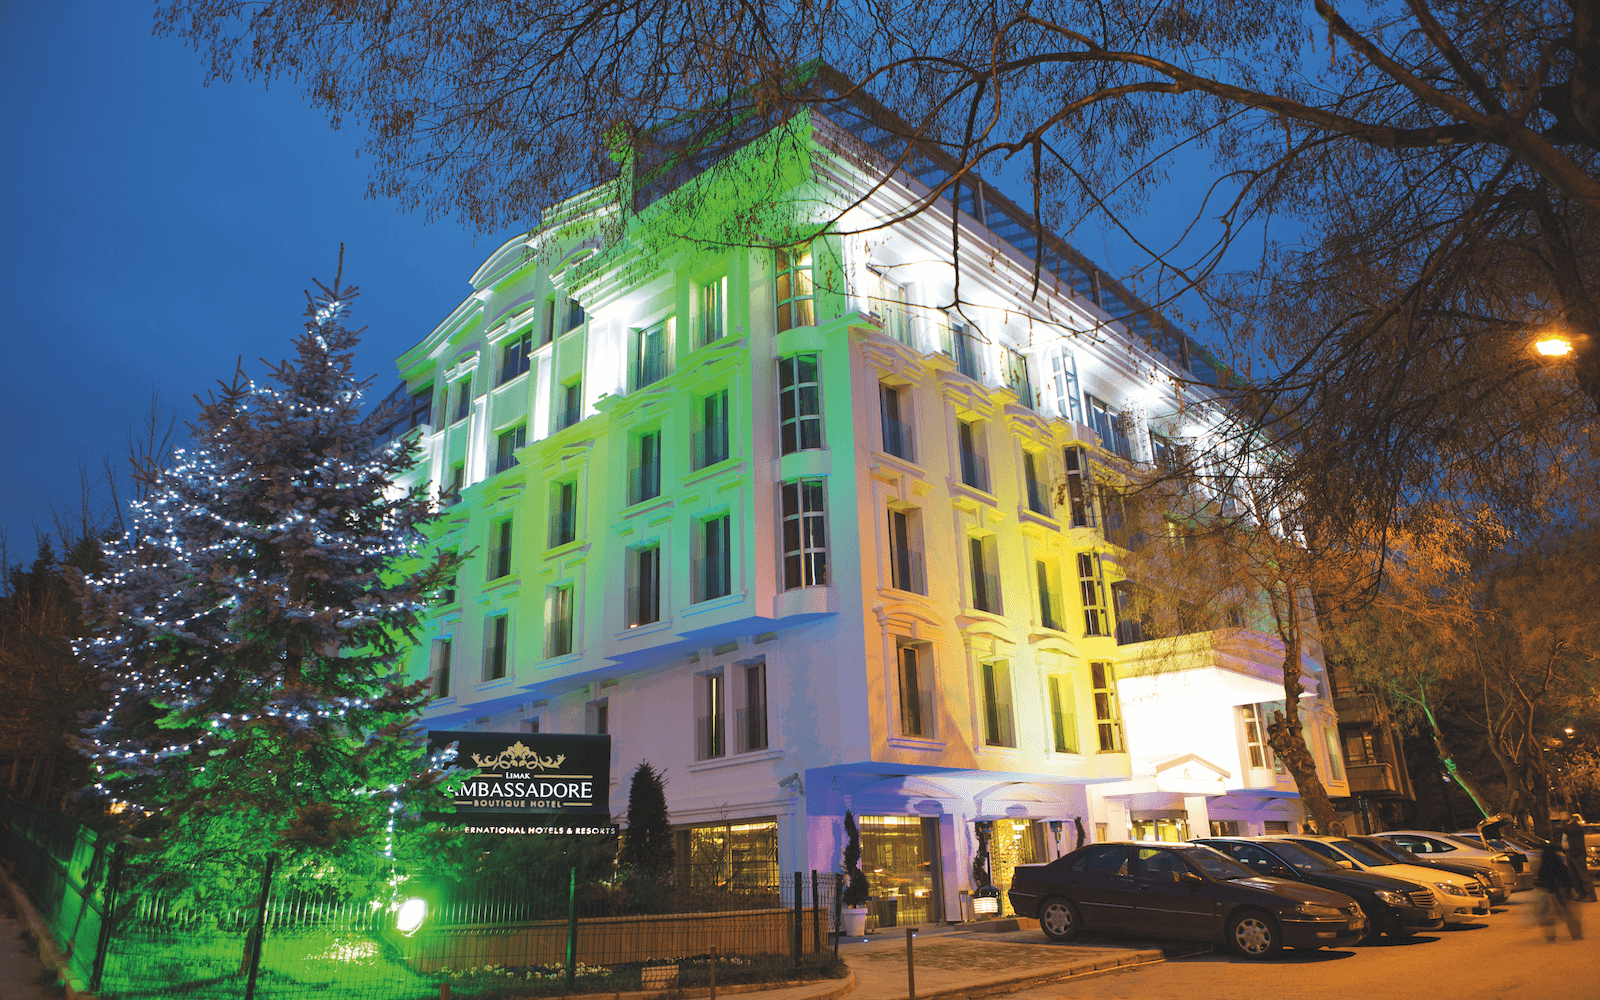 Limak Ambassdore Hotel